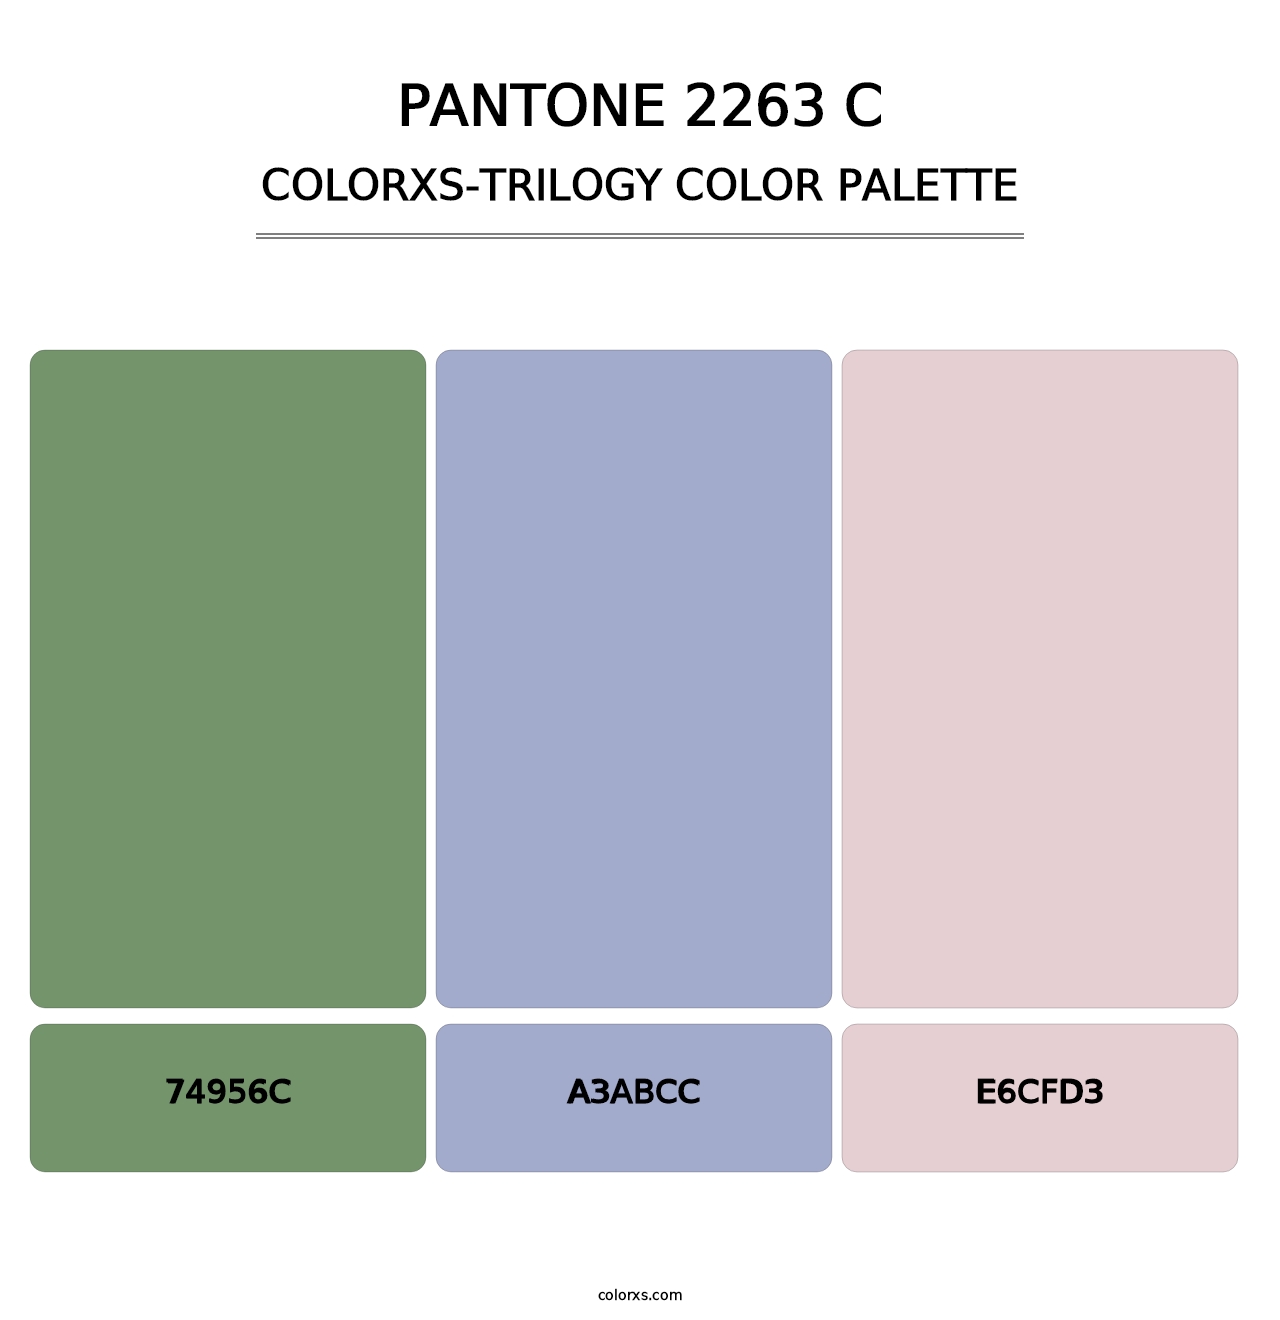 PANTONE 2263 C - Colorxs Trilogy Palette